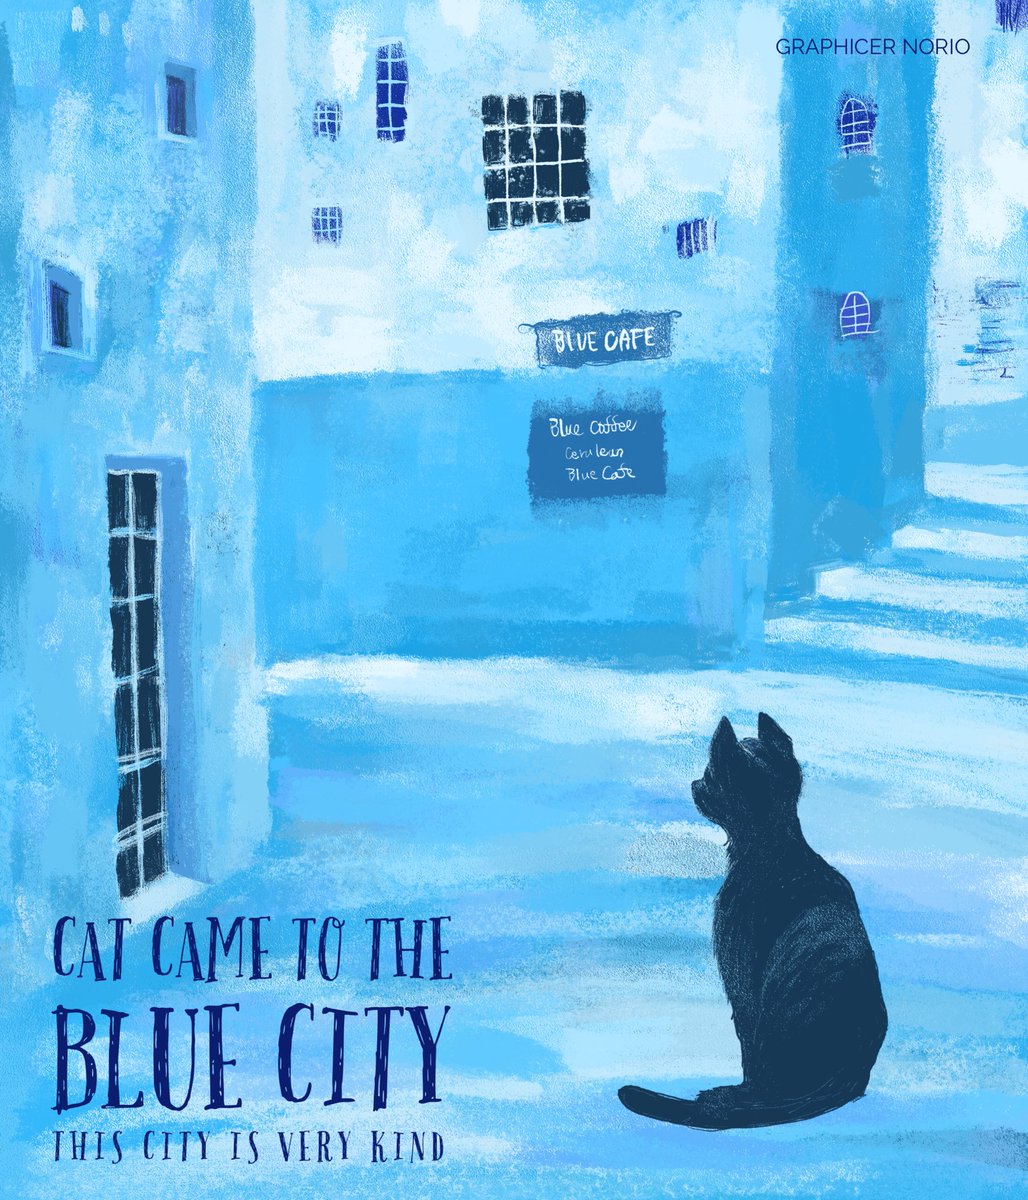 青の町に来た猫 青くてやさしい町 セルリアンブルー #illustration #drawing #illustrationart #picturebook #childrenbook #ceruleanblue #cat #catlovers #blue